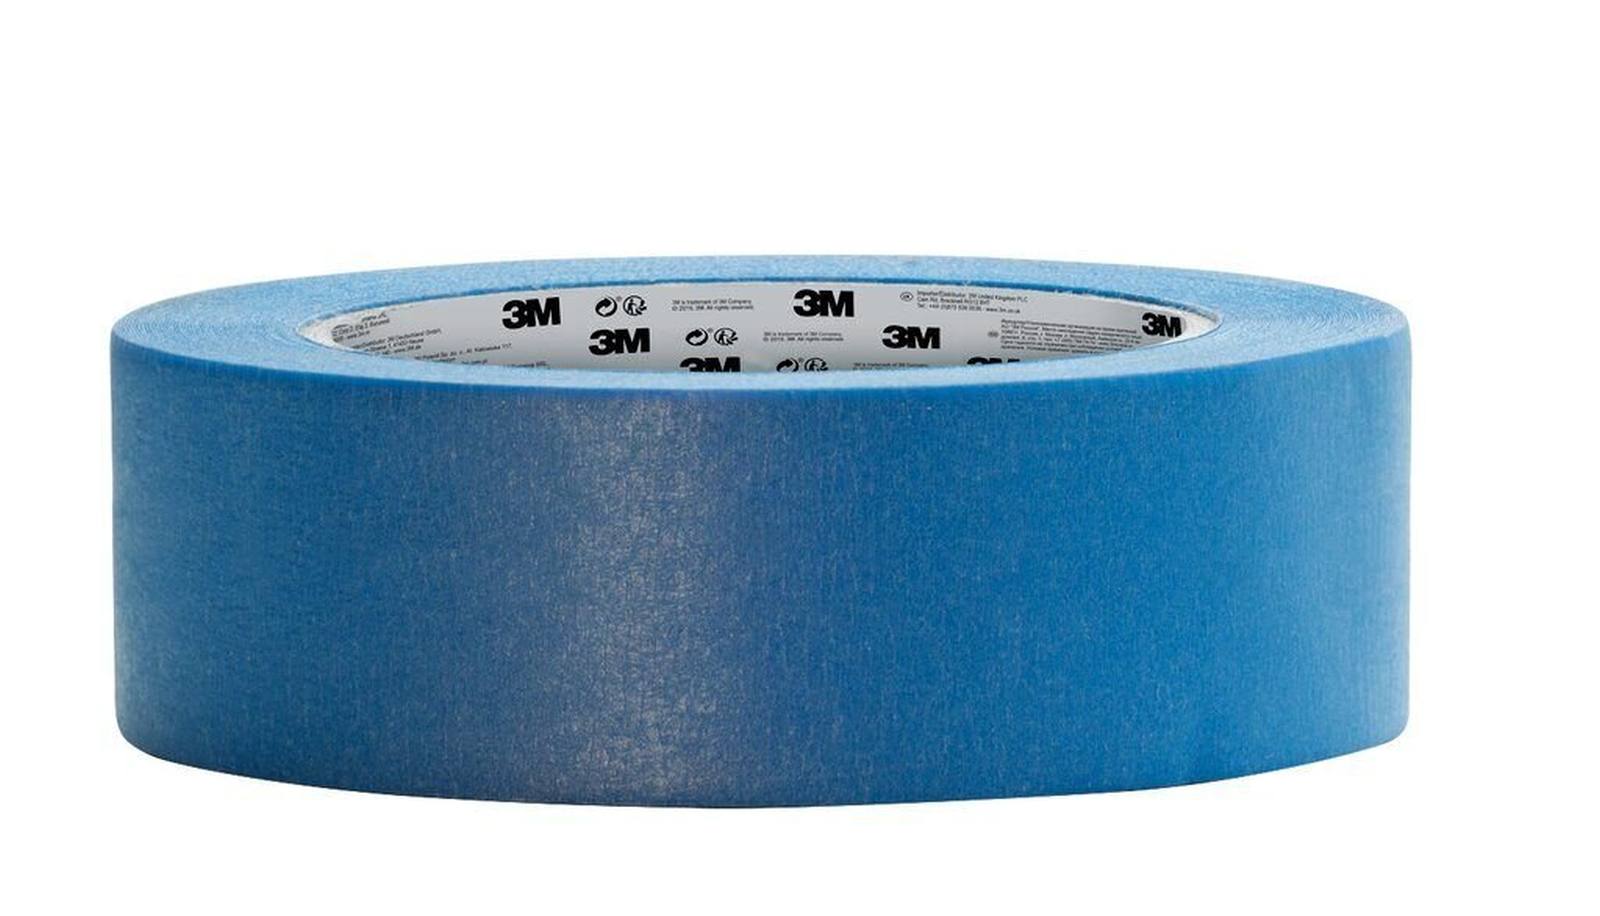 3M Crepe tape 2090, blue, 36 mm x 50m, 0.120 mm